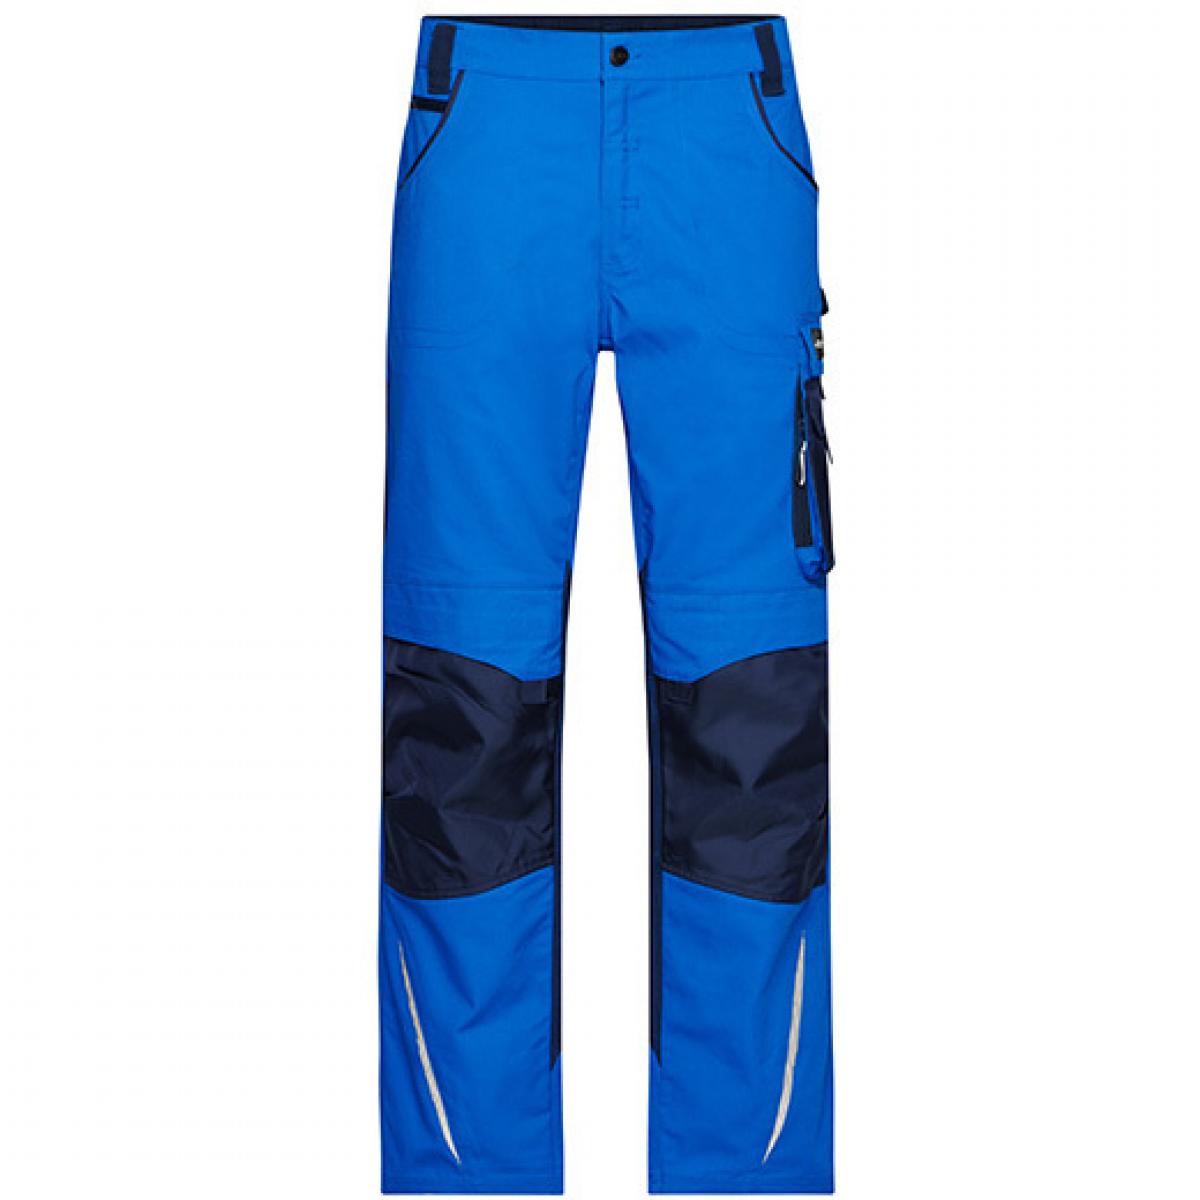 Hersteller: James+Nicholson Herstellernummer: JN832 Artikelbezeichnung: Workwear Pants -STRONG- / Arbeitshose lang Farbe: Royal/Navy